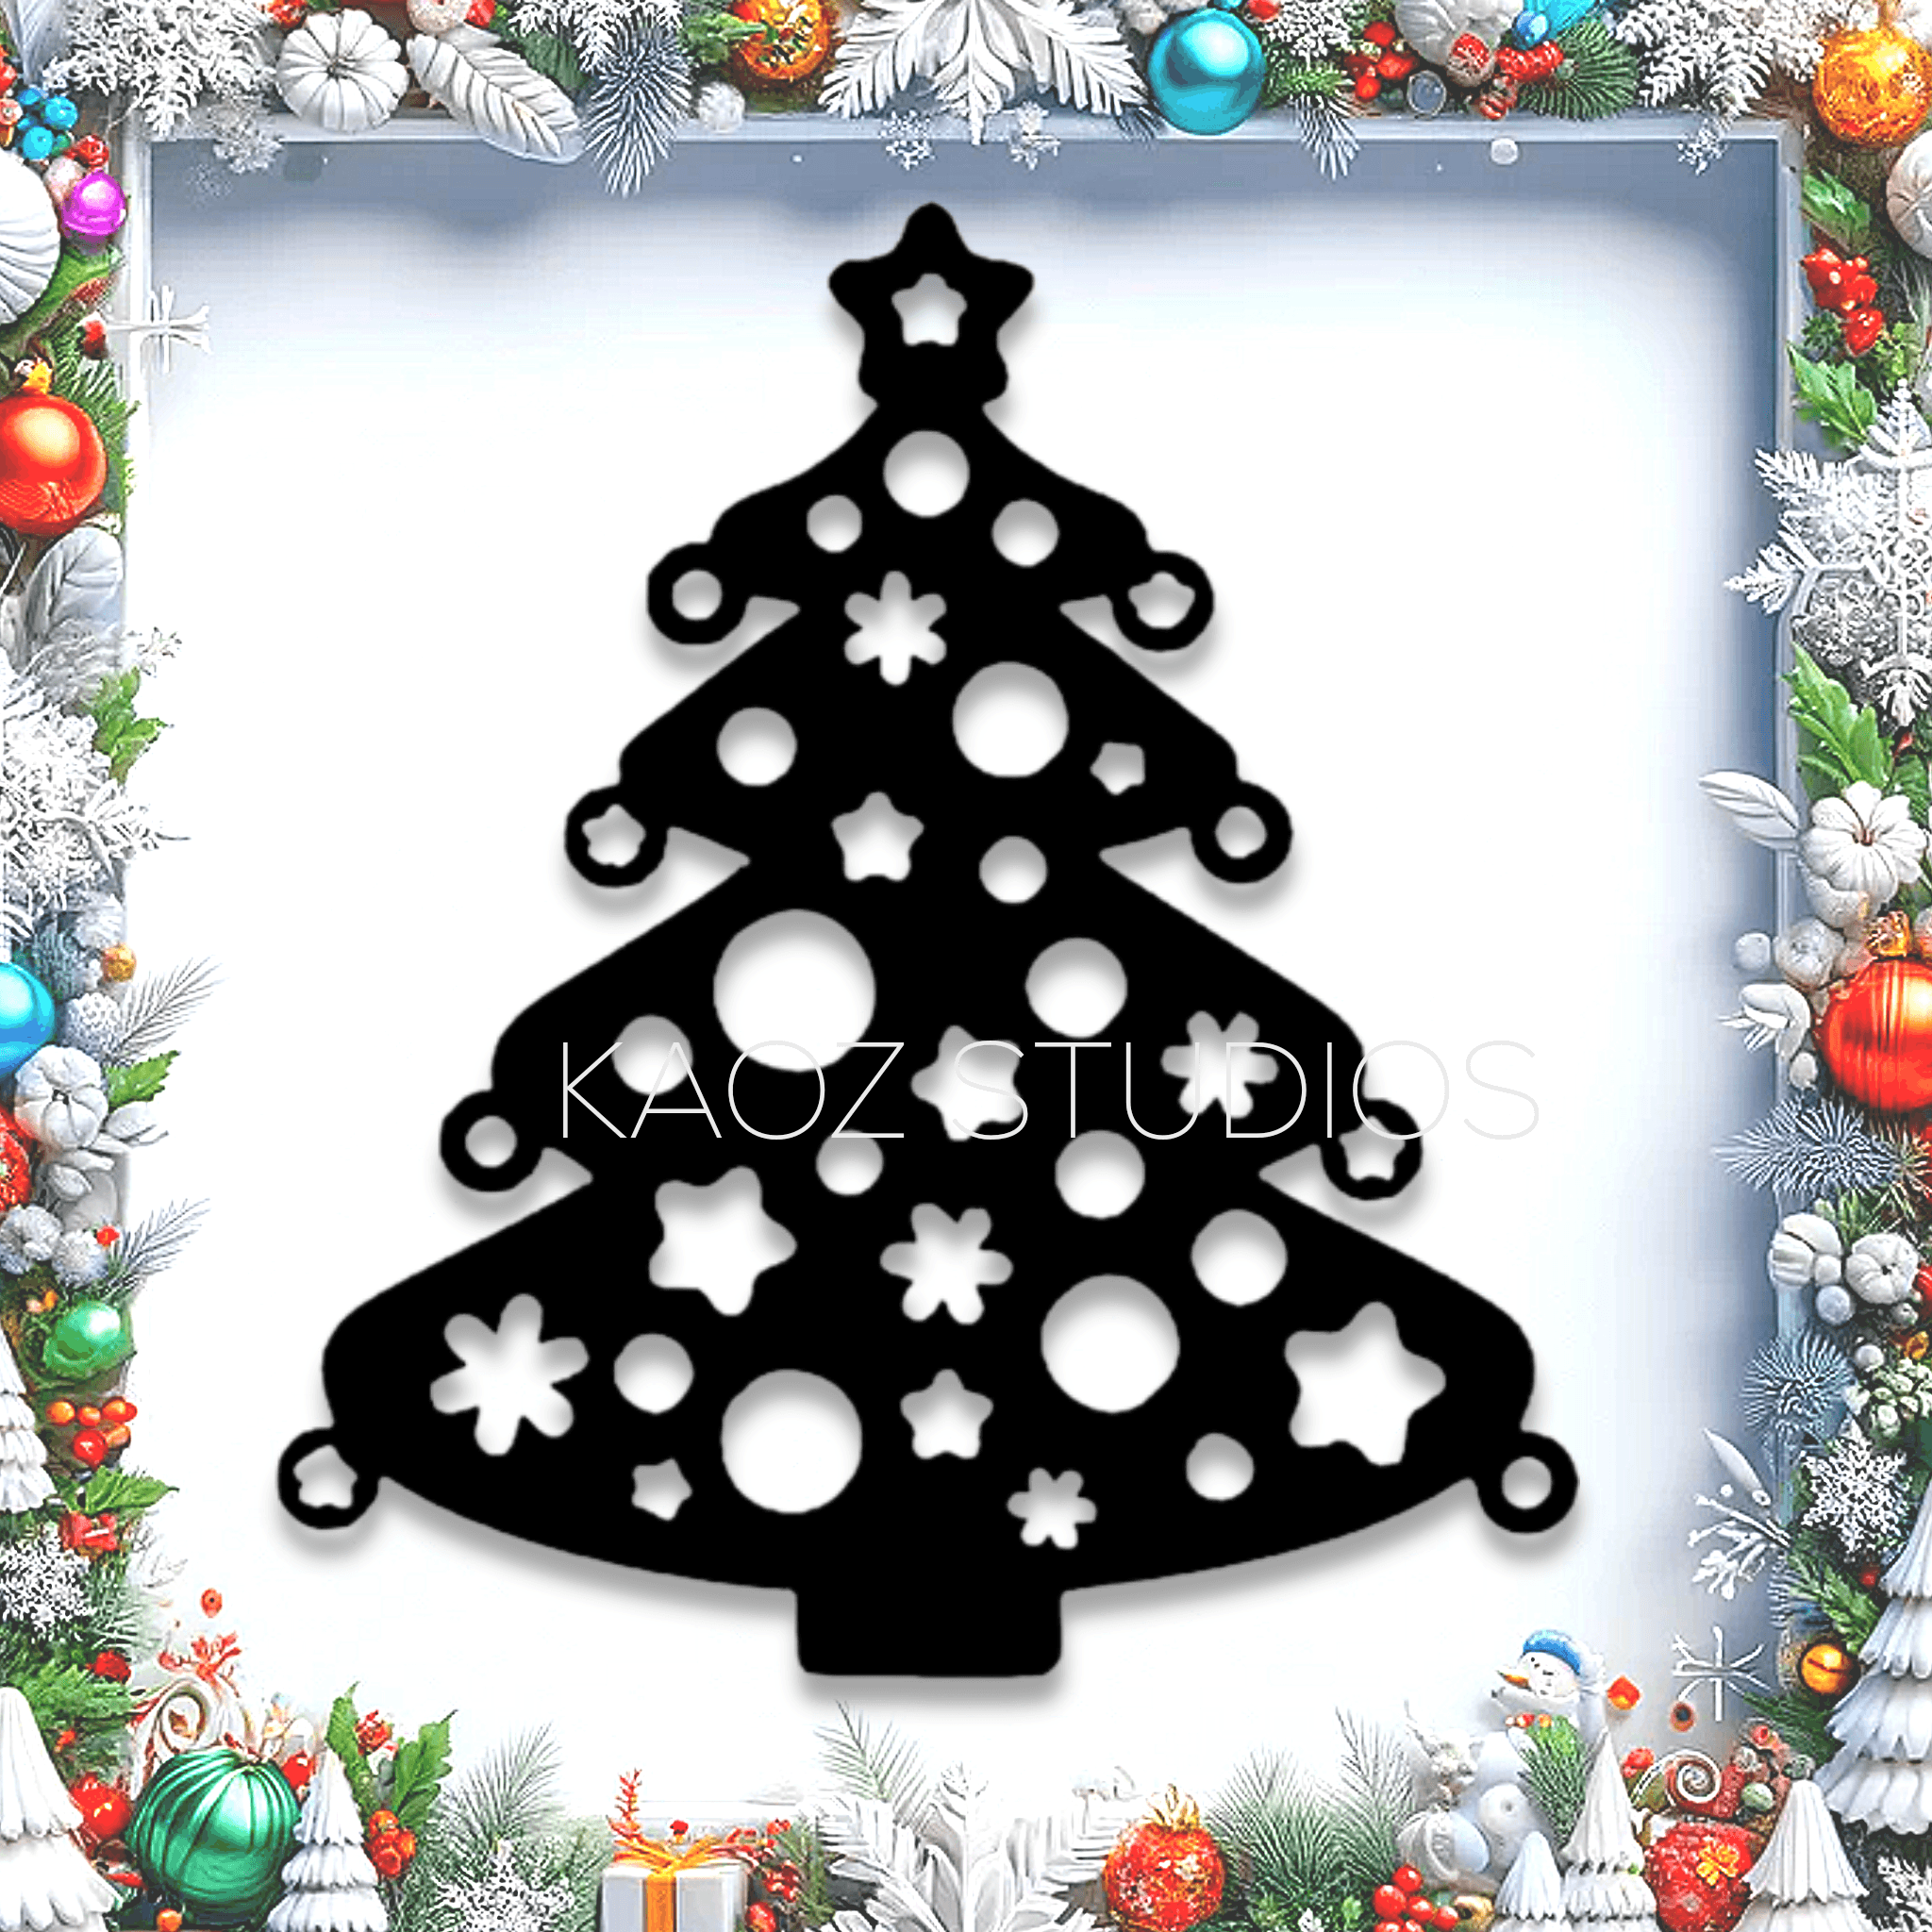 XMAS TREE wall art Christmas wall decor 2d holiday decoration 3d model